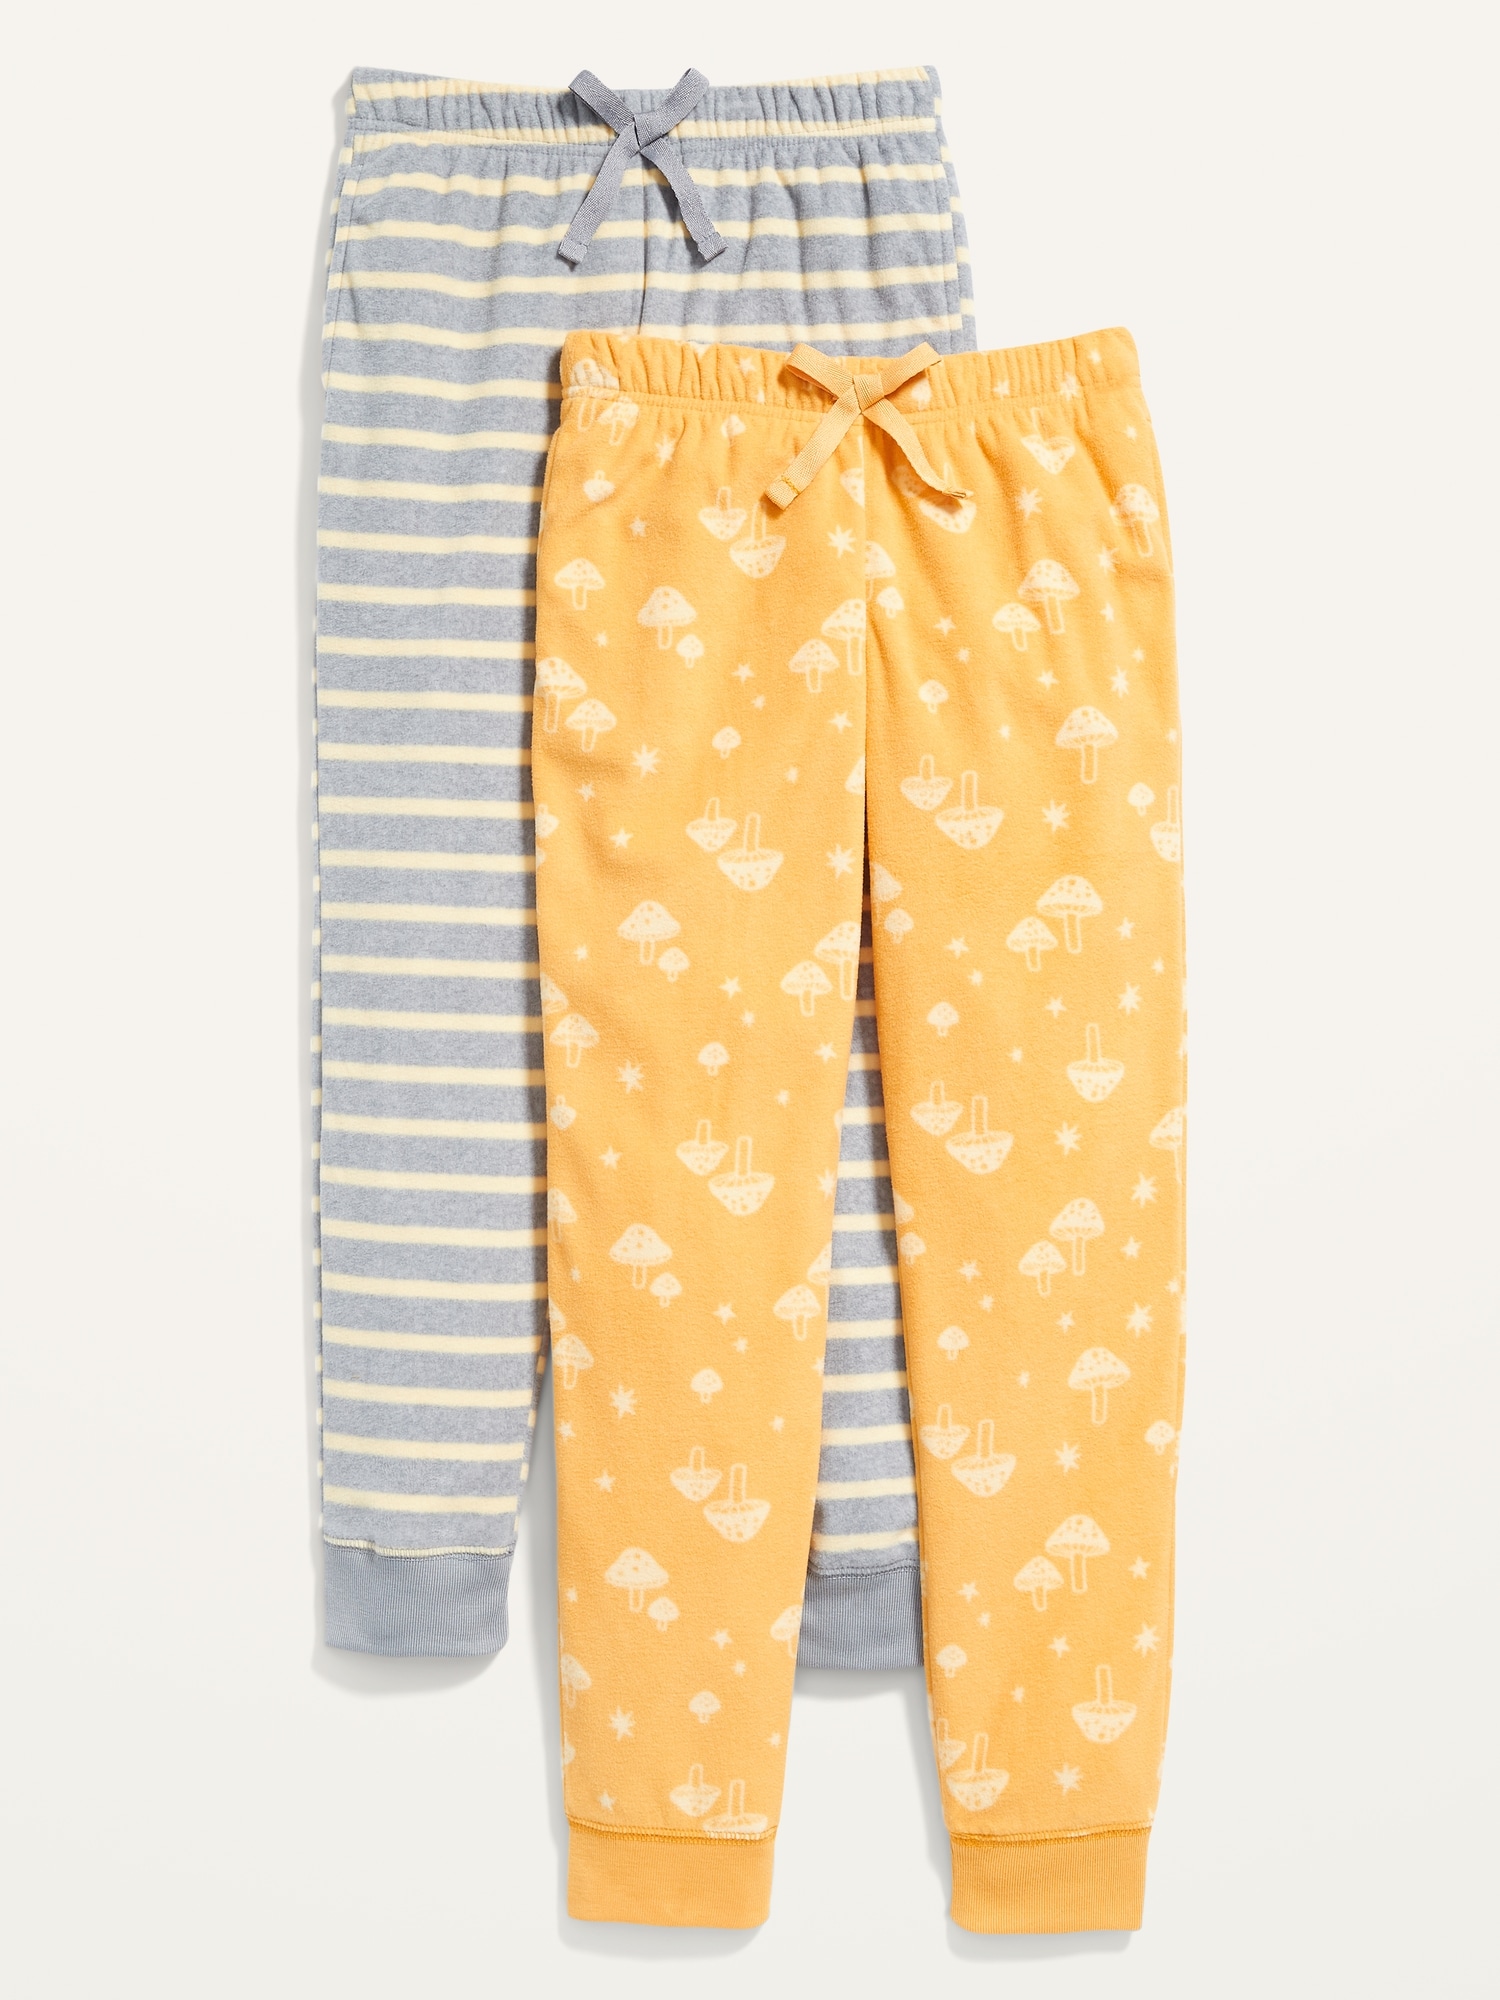 Buy Pink  Blue Pyjamas  Shorts for Women by VAN HEUSEN Online  Ajiocom